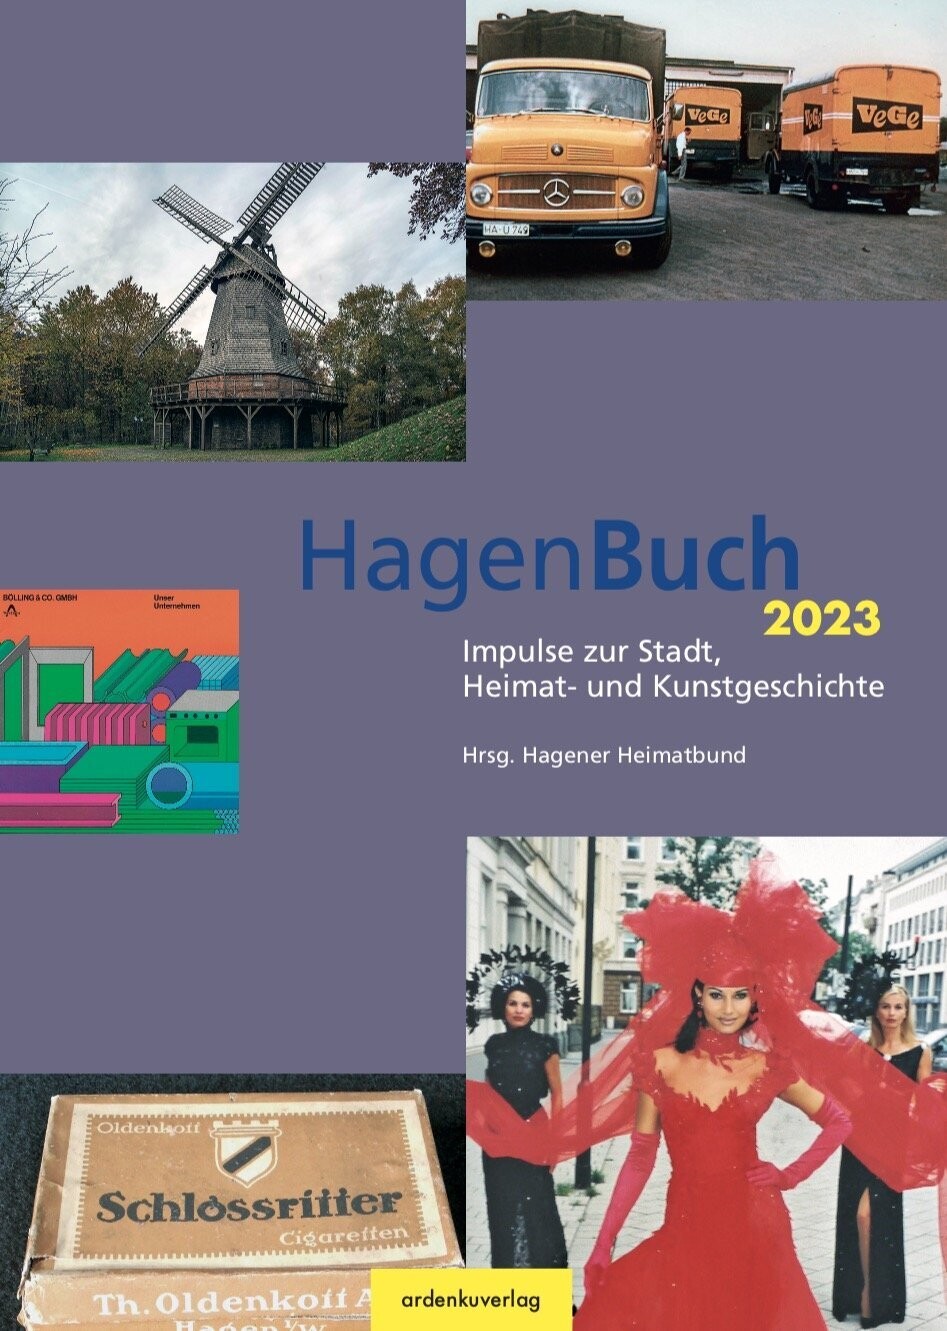 HagenBuch 2023